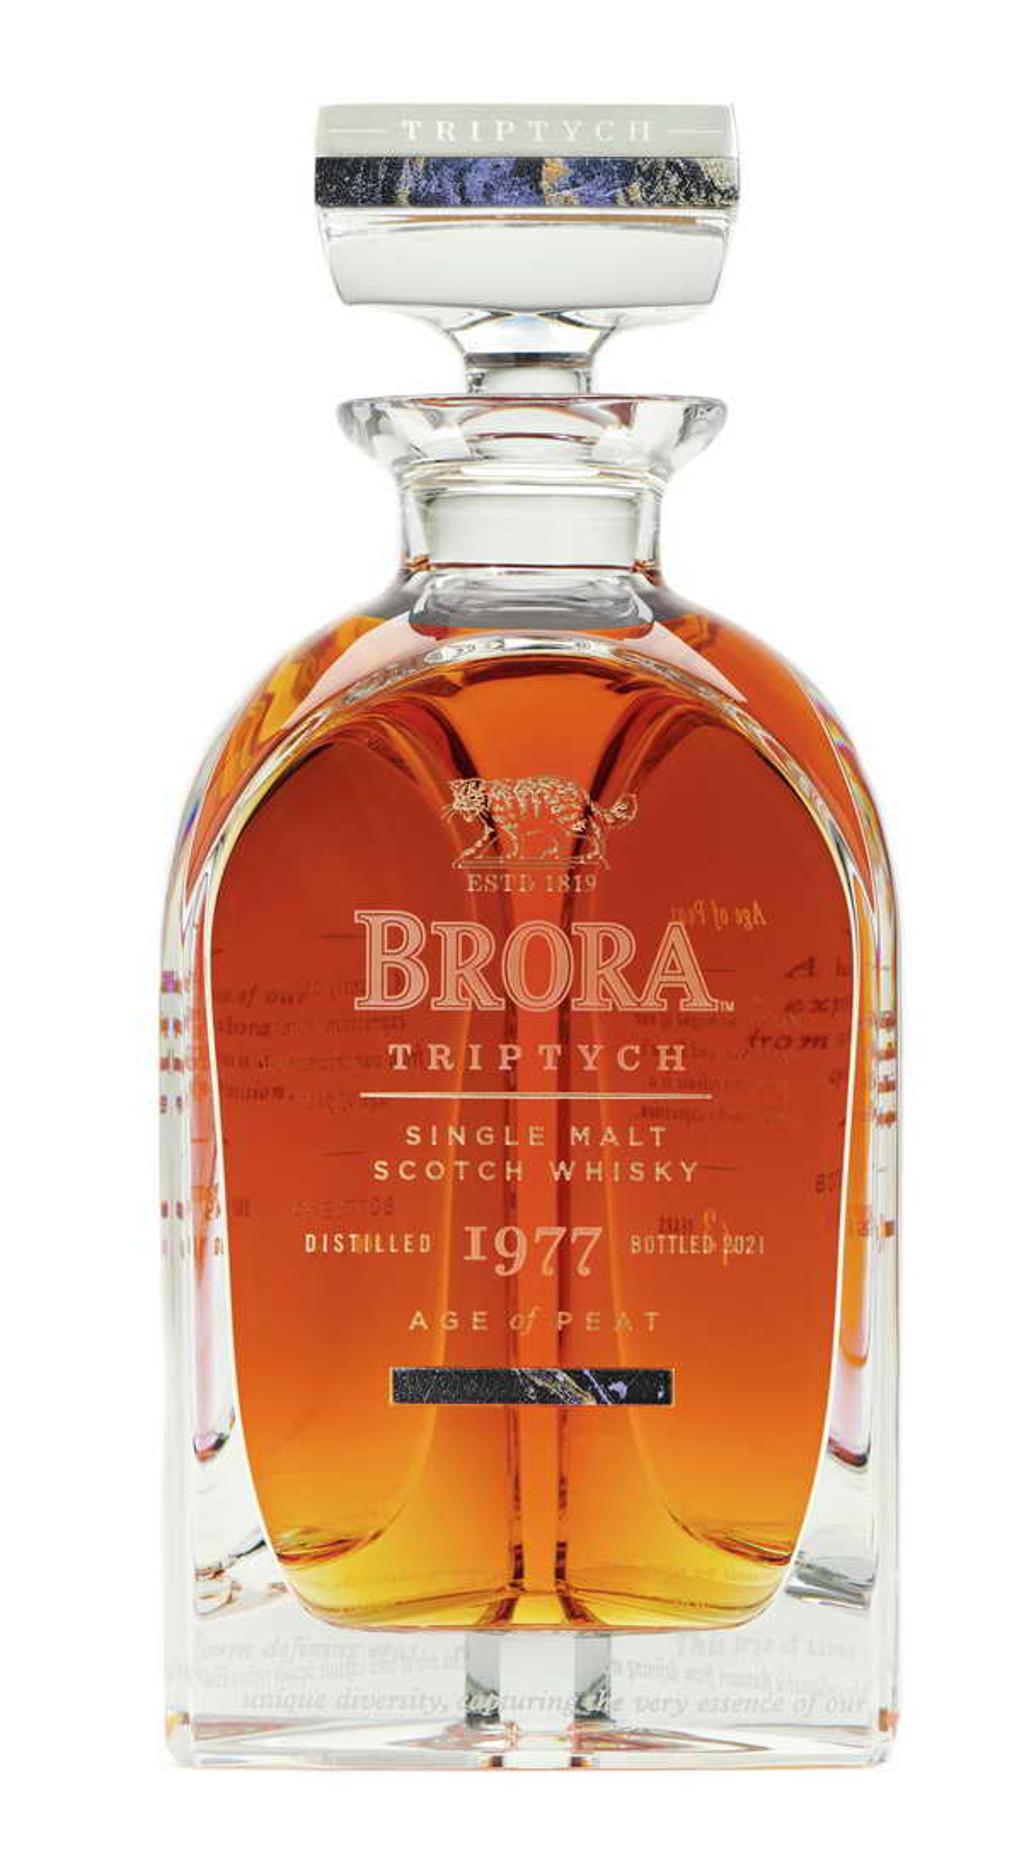  「BRORA TRIPTYCH 限量藏家原酒組」中的1977：The Age of Peat‧泥煤世代1977，BRORA在1972-1980年間開始生產具有泥煤風格的威士忌，為頂級調和威士忌帶來BRORA經典風味。在當時未曾有一個酒廠如此投入泥煤風格威士忌的創作。此款原酒表現出BRORA最經典的泥煤Peated風味。ABV 48.6%。圖／業者提供 